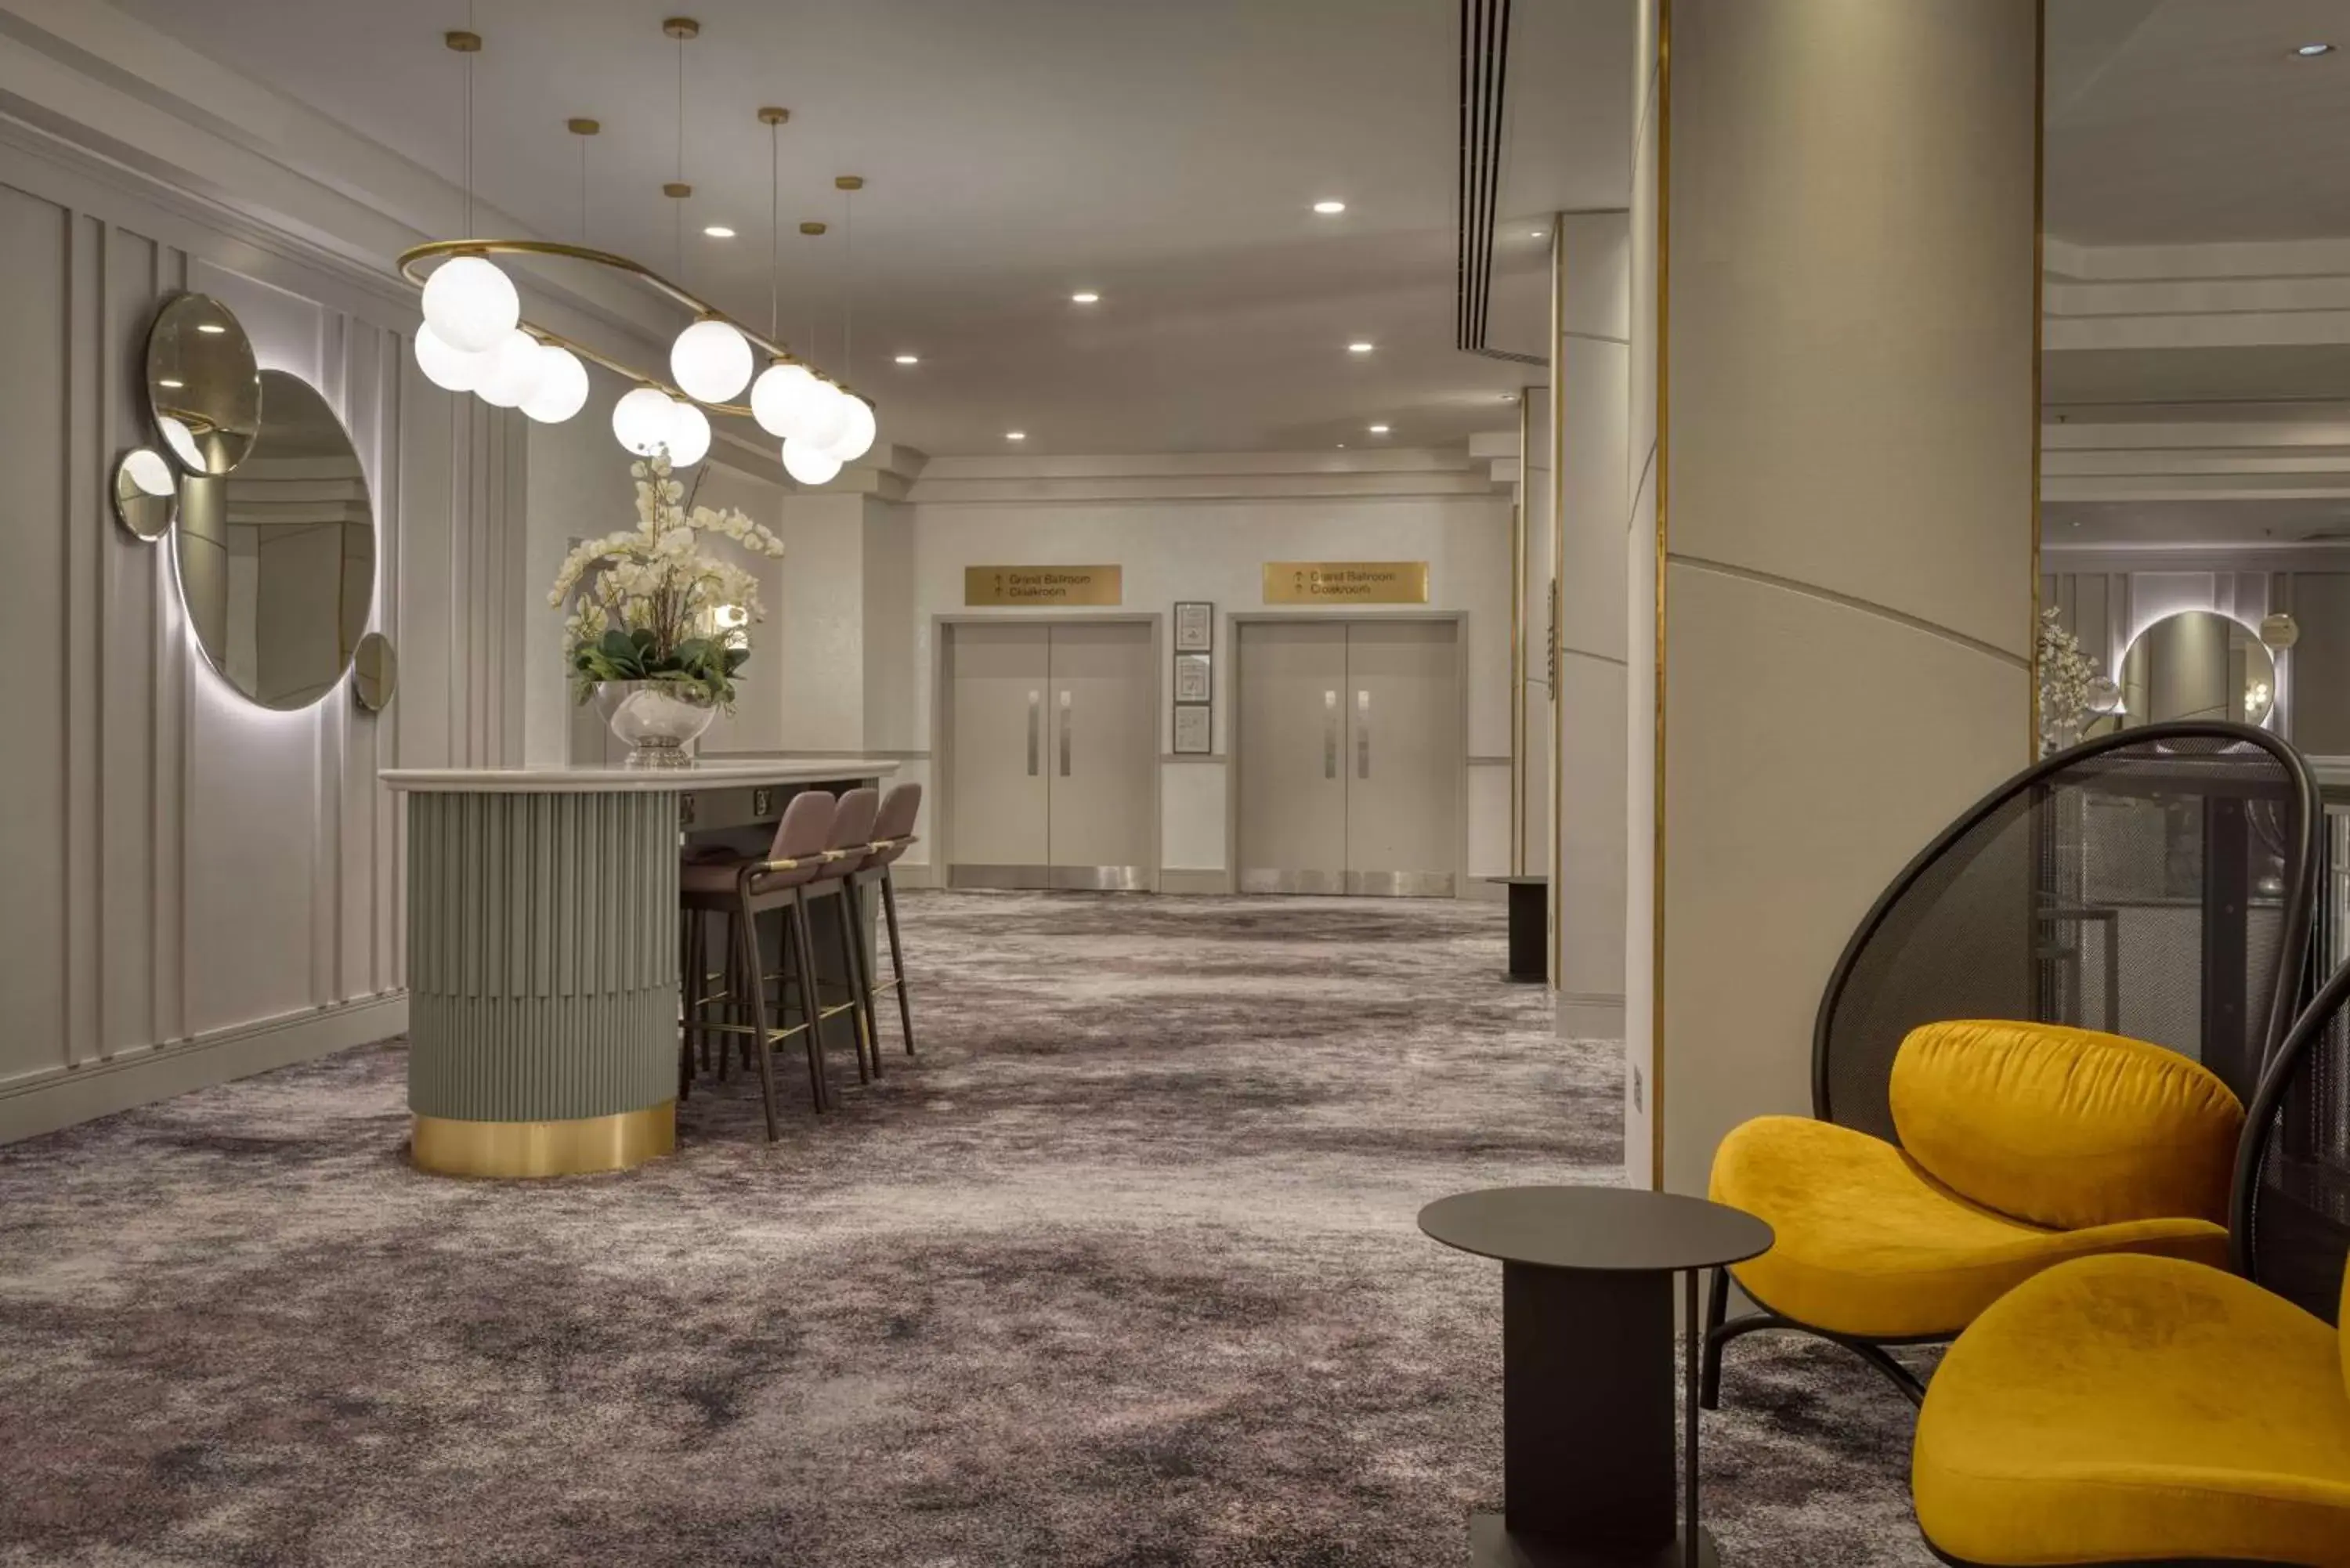 Lobby or reception, Lobby/Reception in Hilton Glasgow